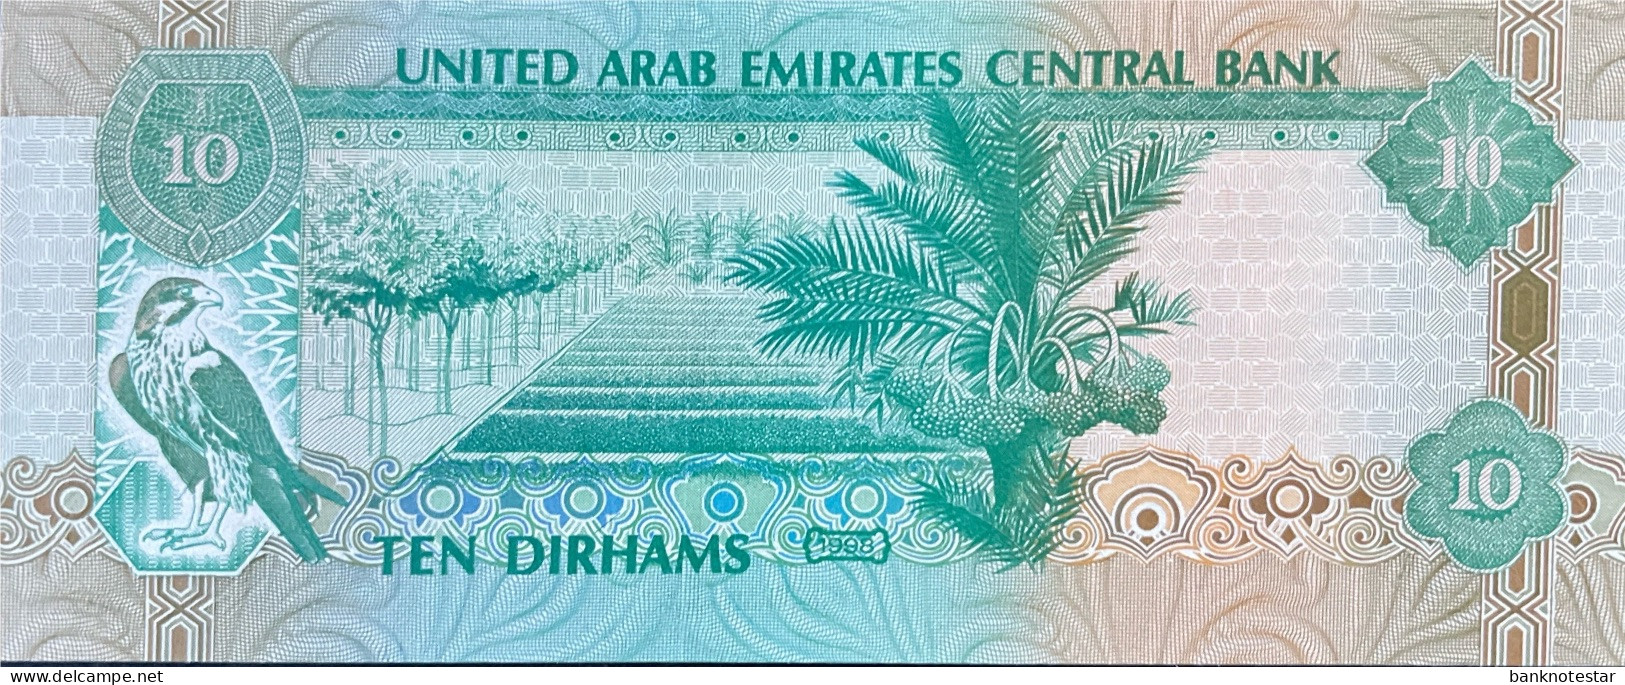 United Arab Emirates 10 Dirhams, P-20a (1998) - UNC - Prefix 01 - United Arab Emirates